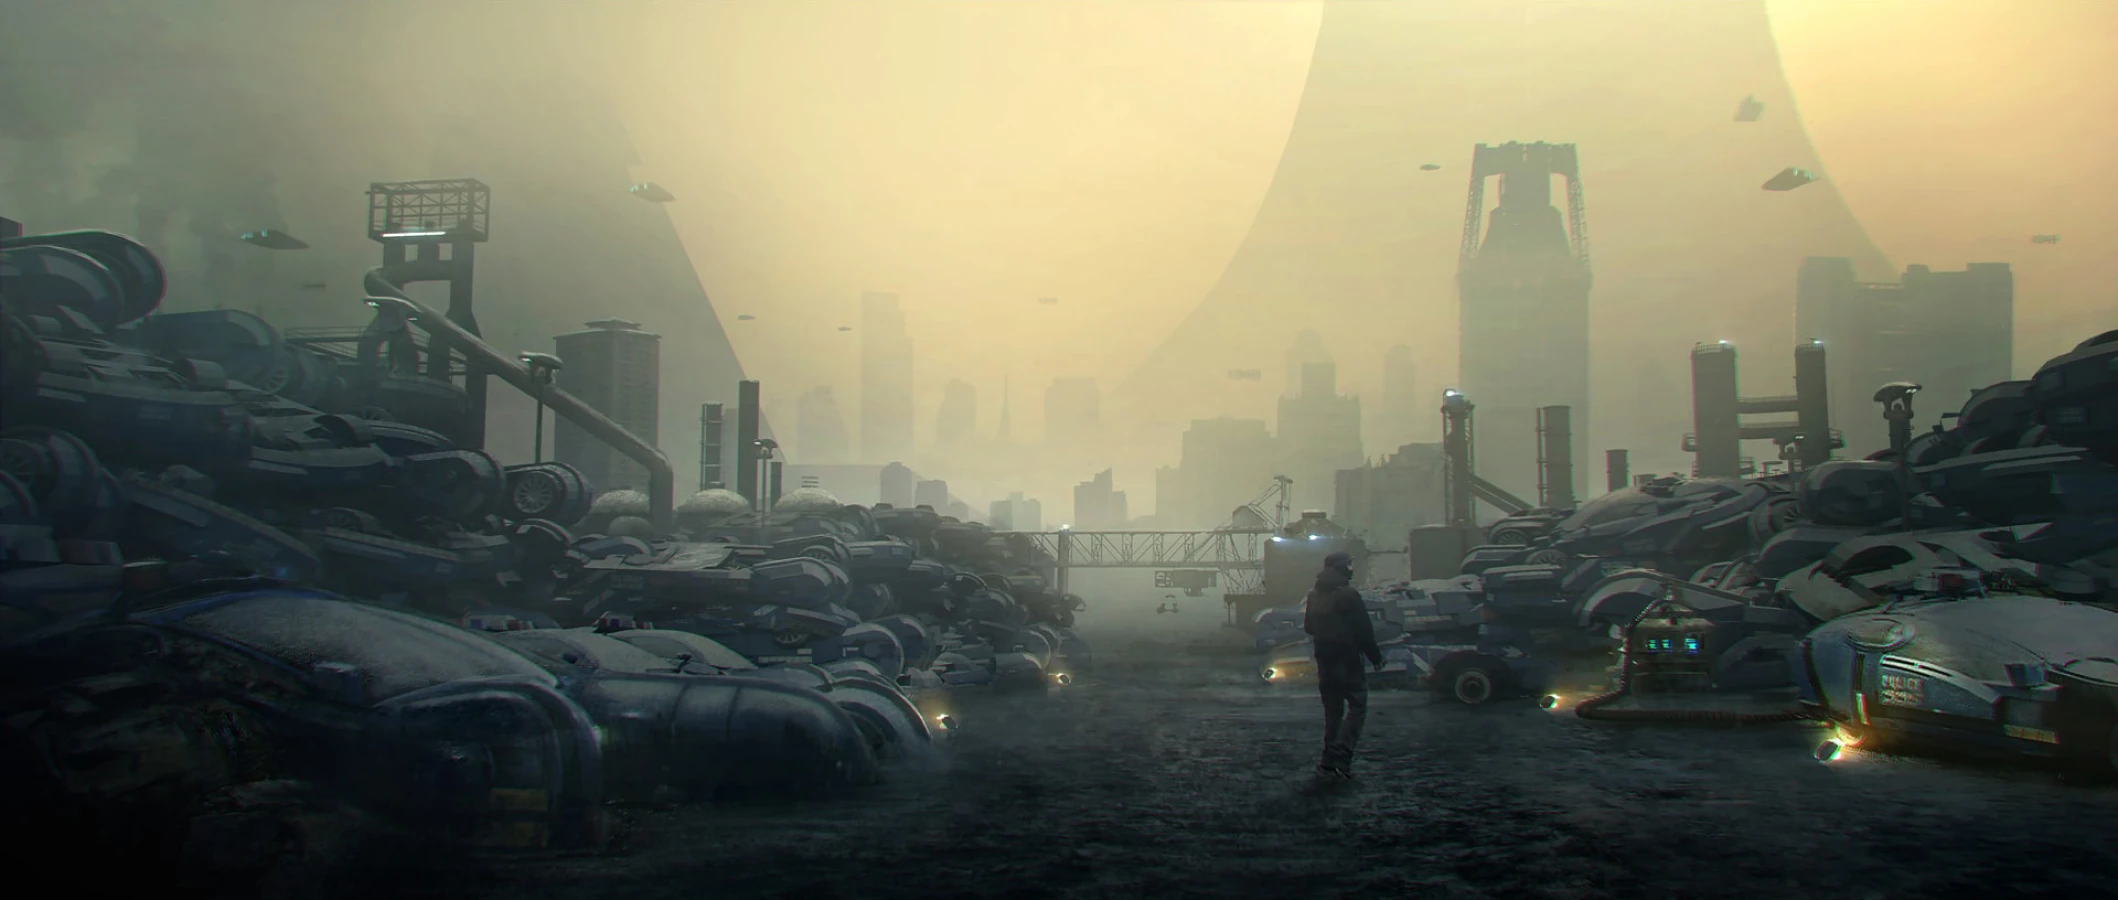  Cars in smog Blade Runner Raynault vfx 